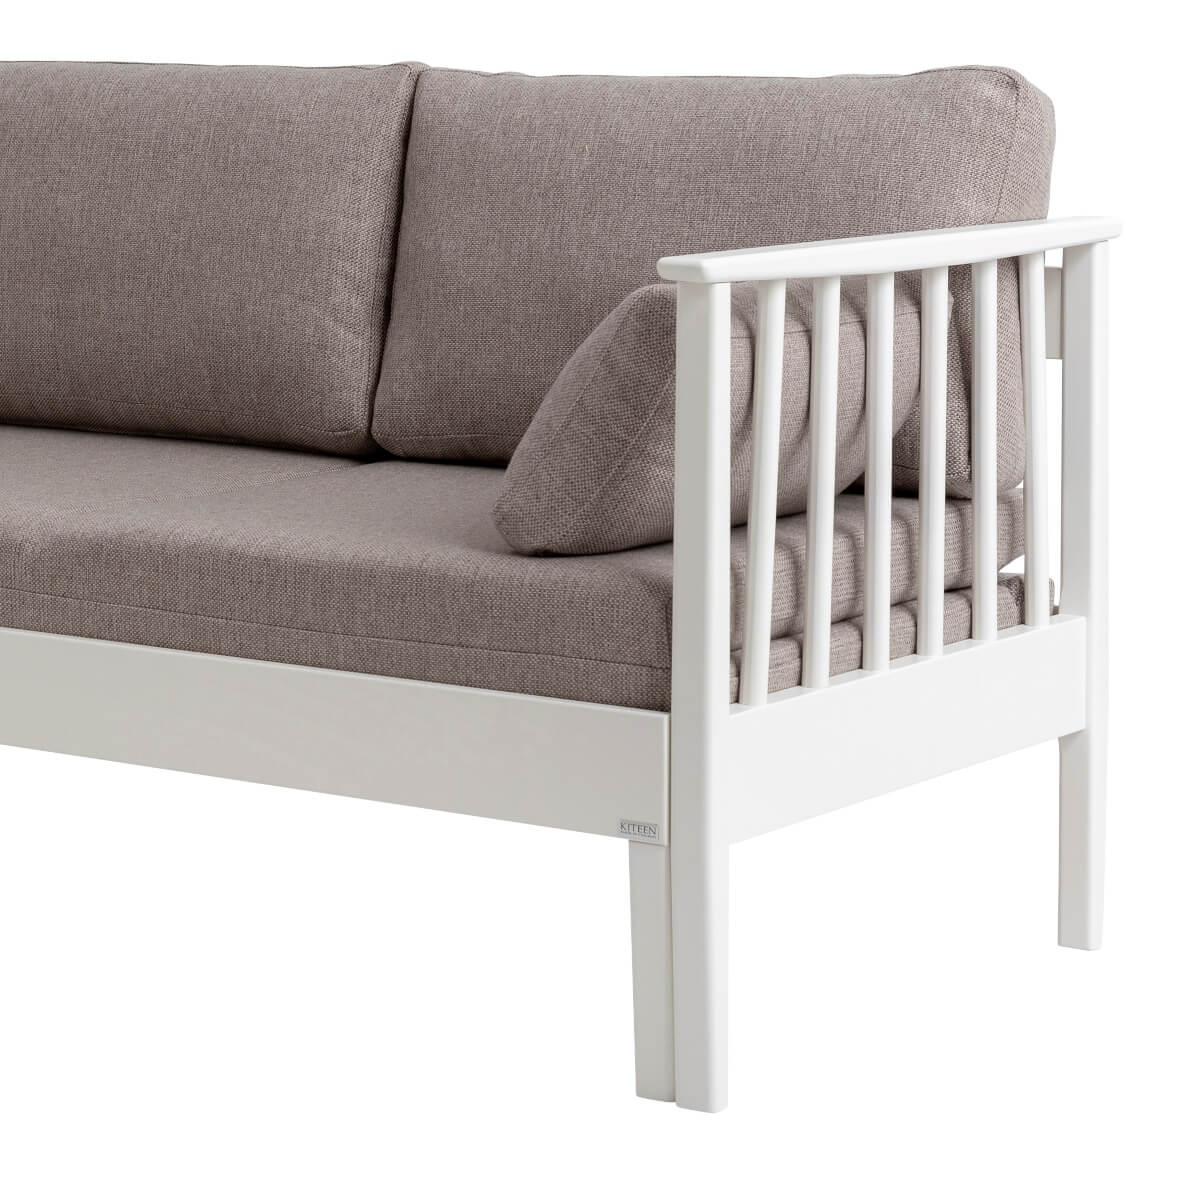 Sofa wysuwana do przodu NOEL. Biały bok z drewna brzozy skandynawskiej, 3 beżowe poduszki i materac, wysokie nóżki